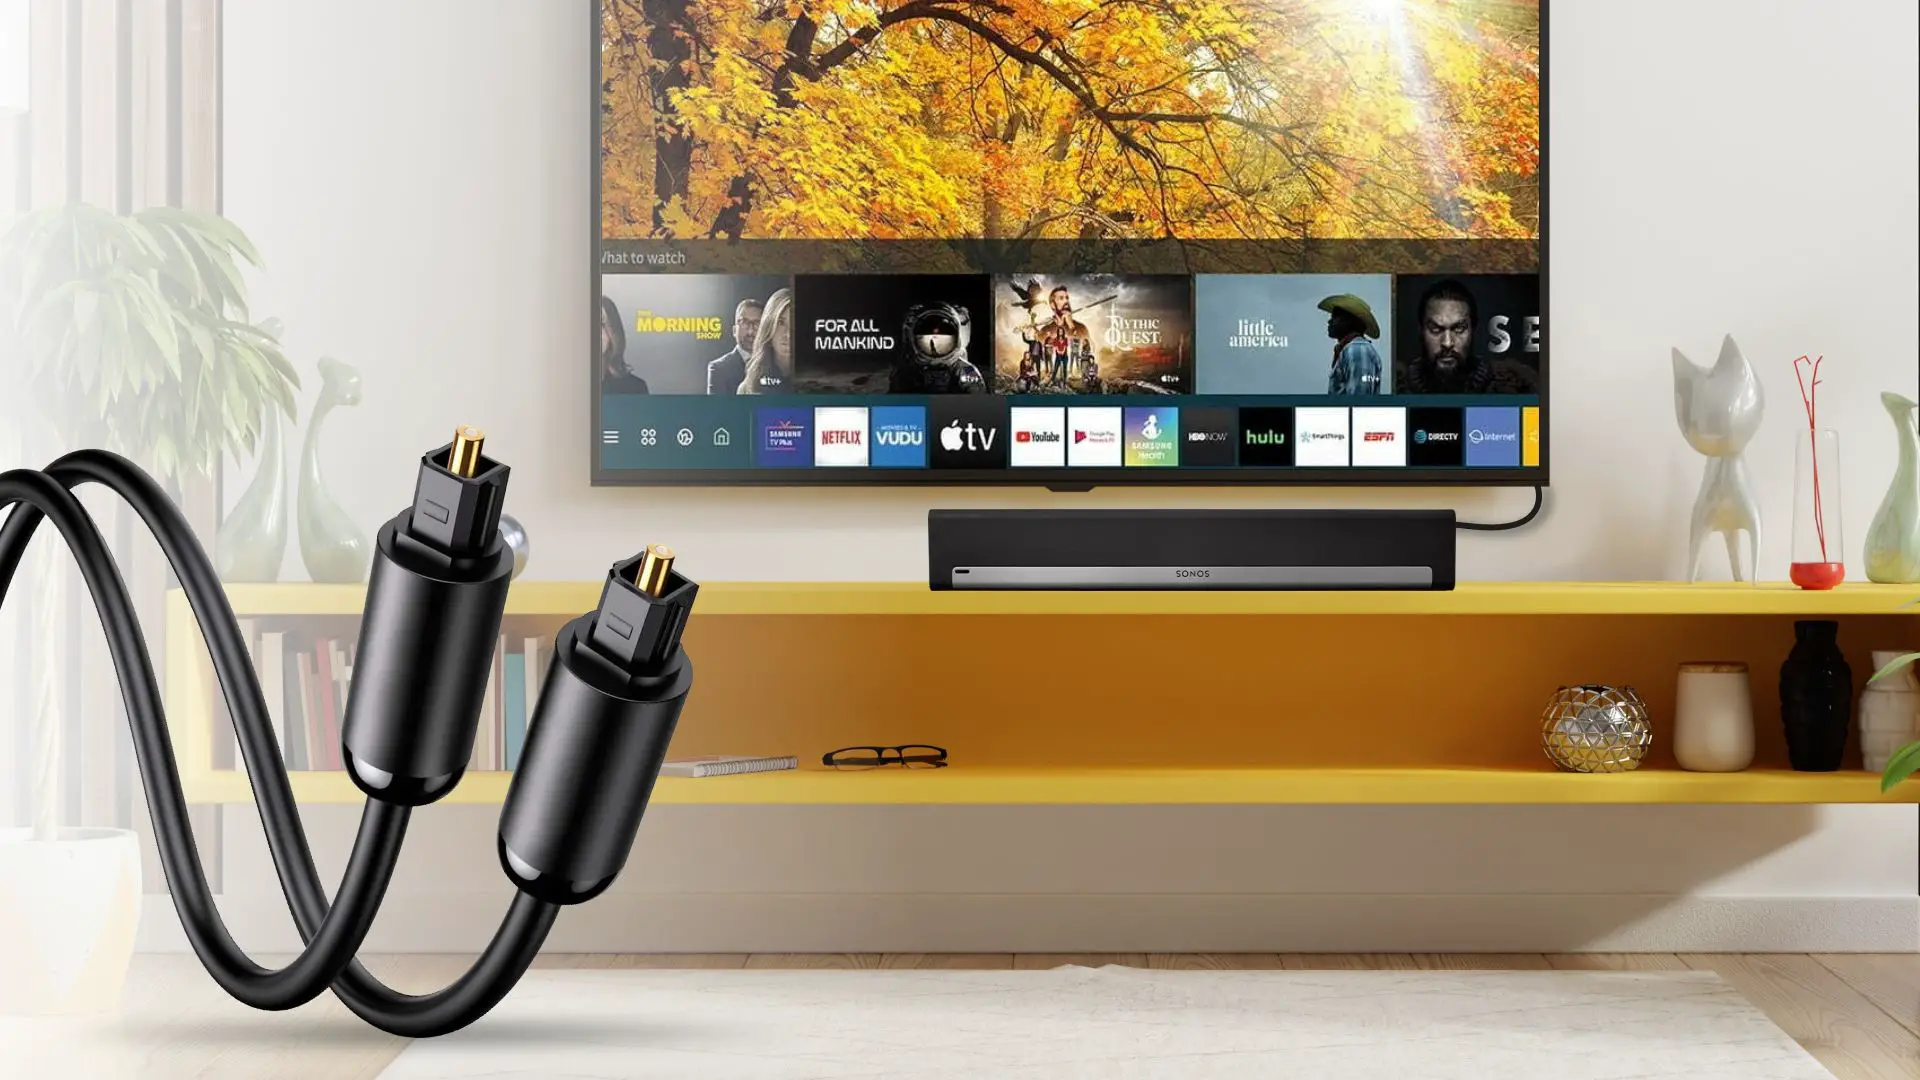 Connecting Sonos soundbar to TV using an Optical Audio Cable